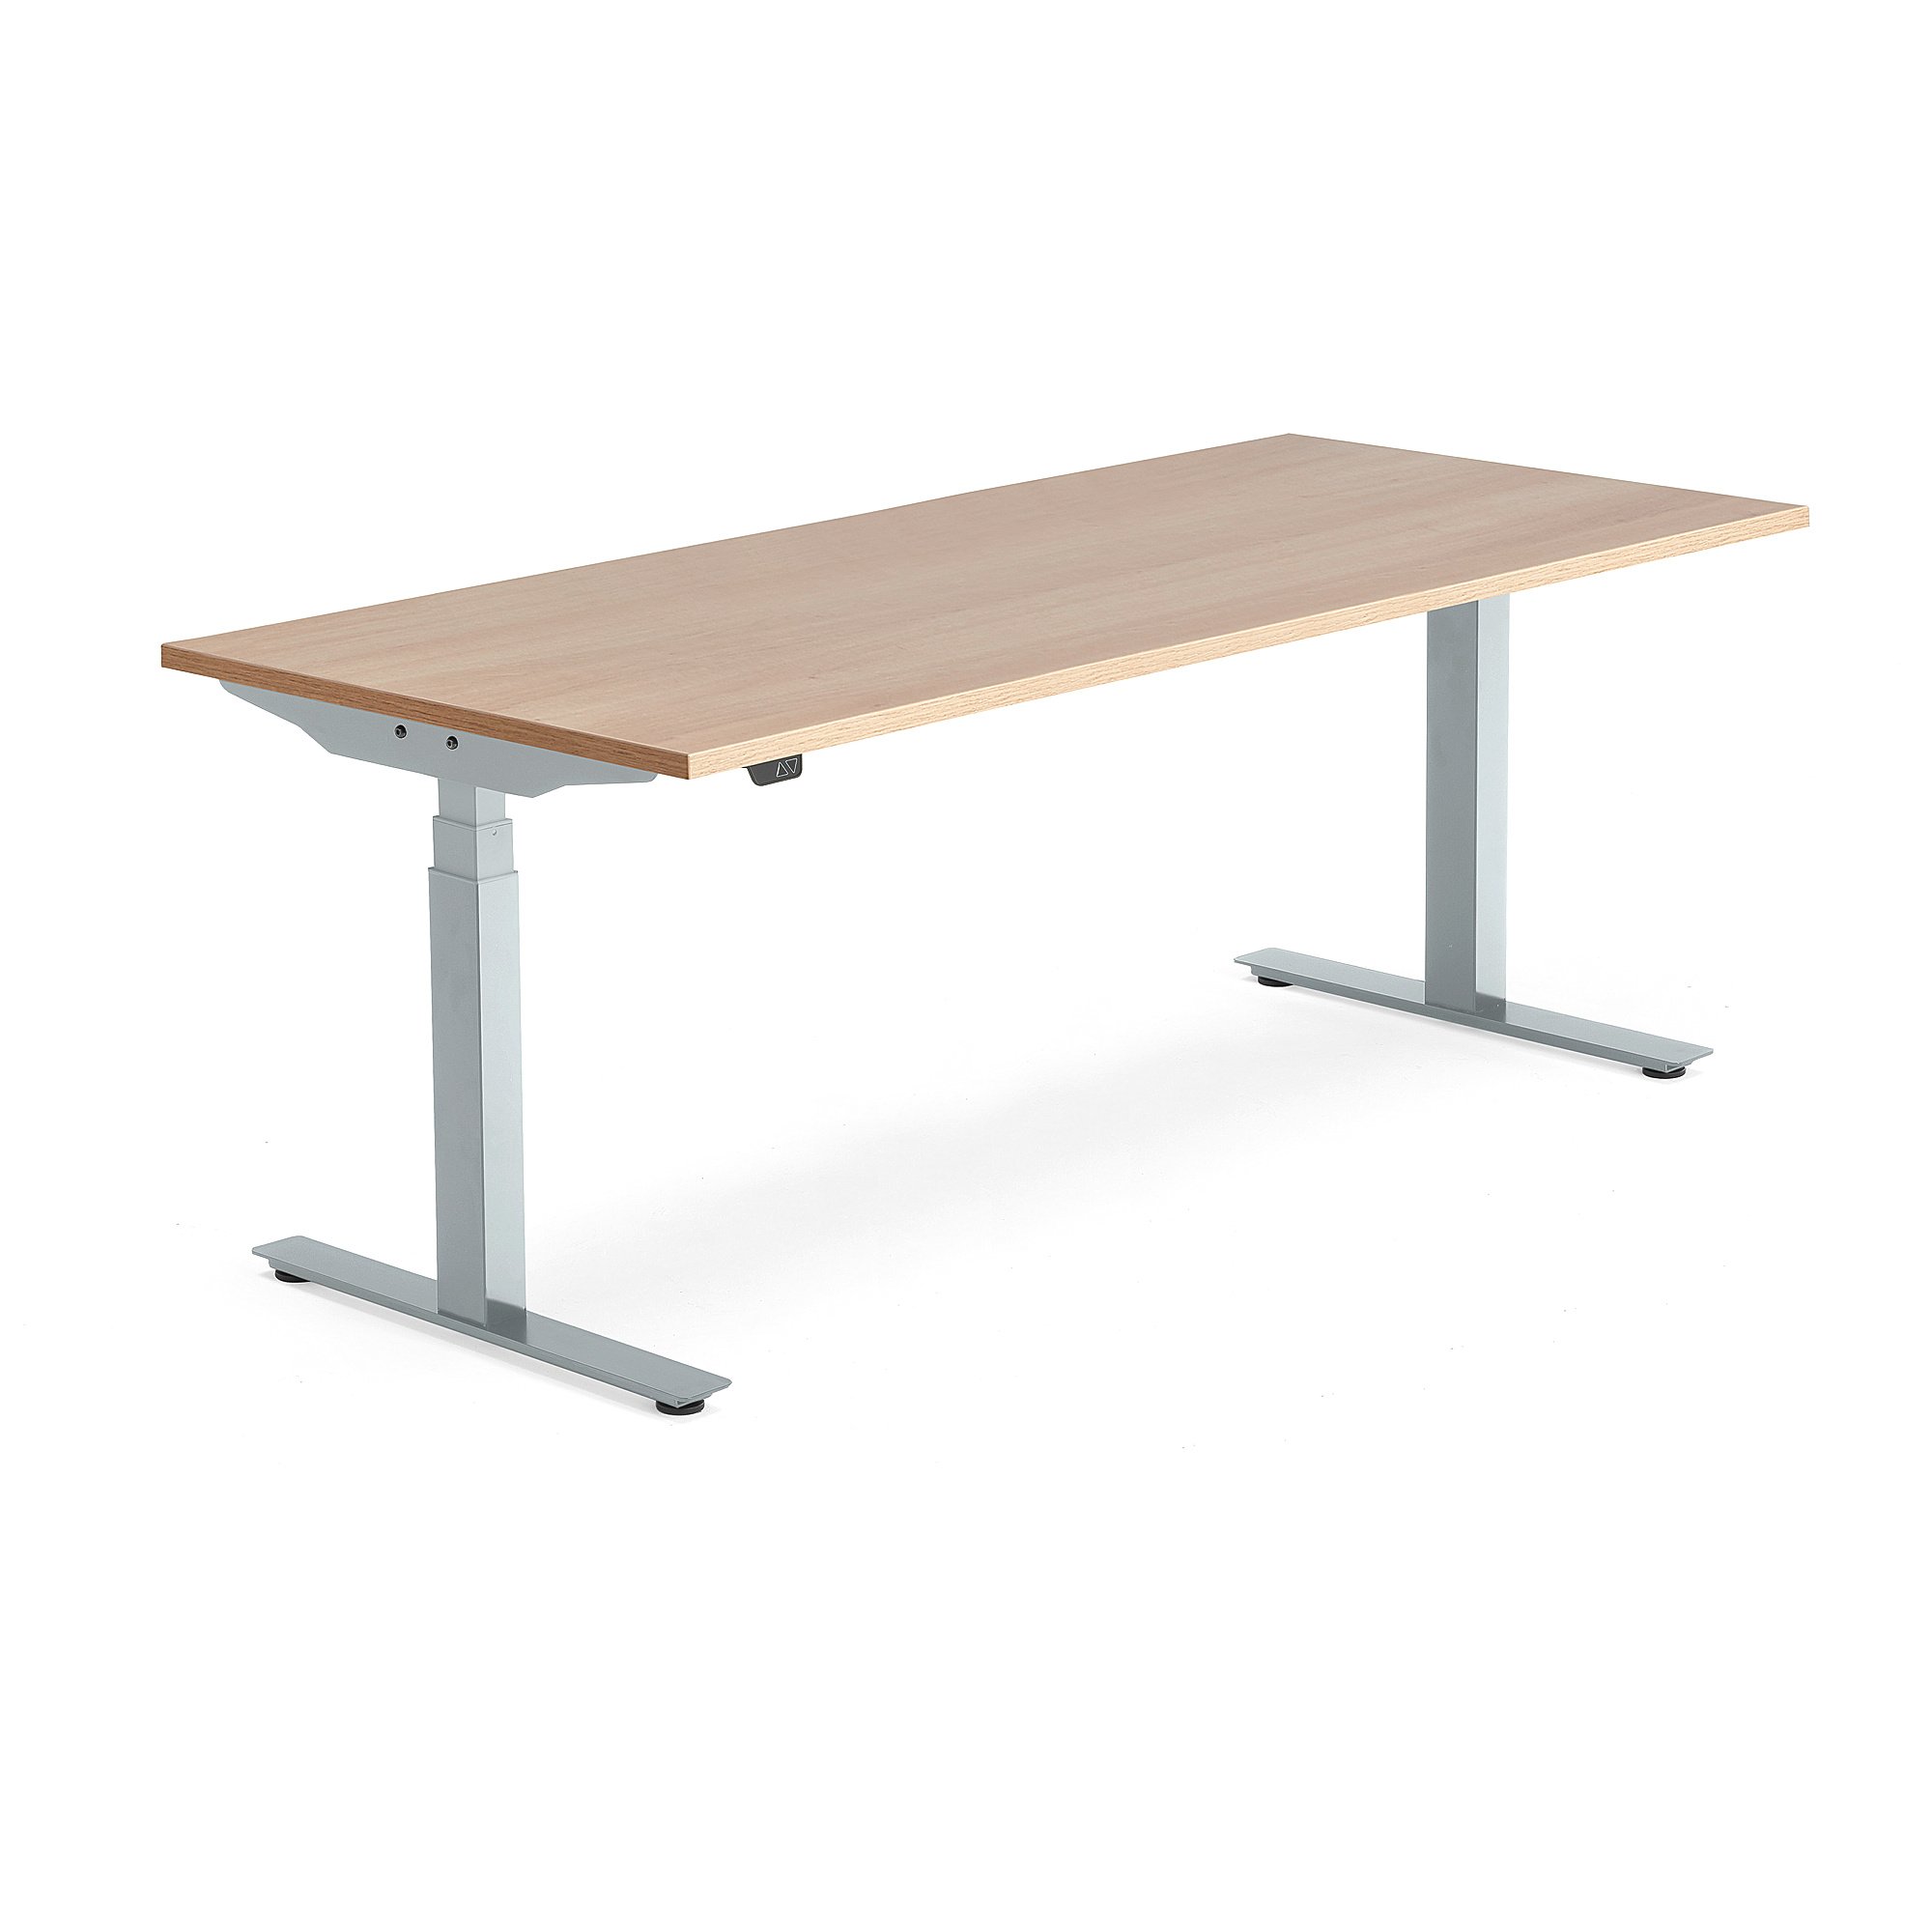 Výškově nastavitelný stůl MODULUS, 1800x800 mm, stříbrný rám, dub